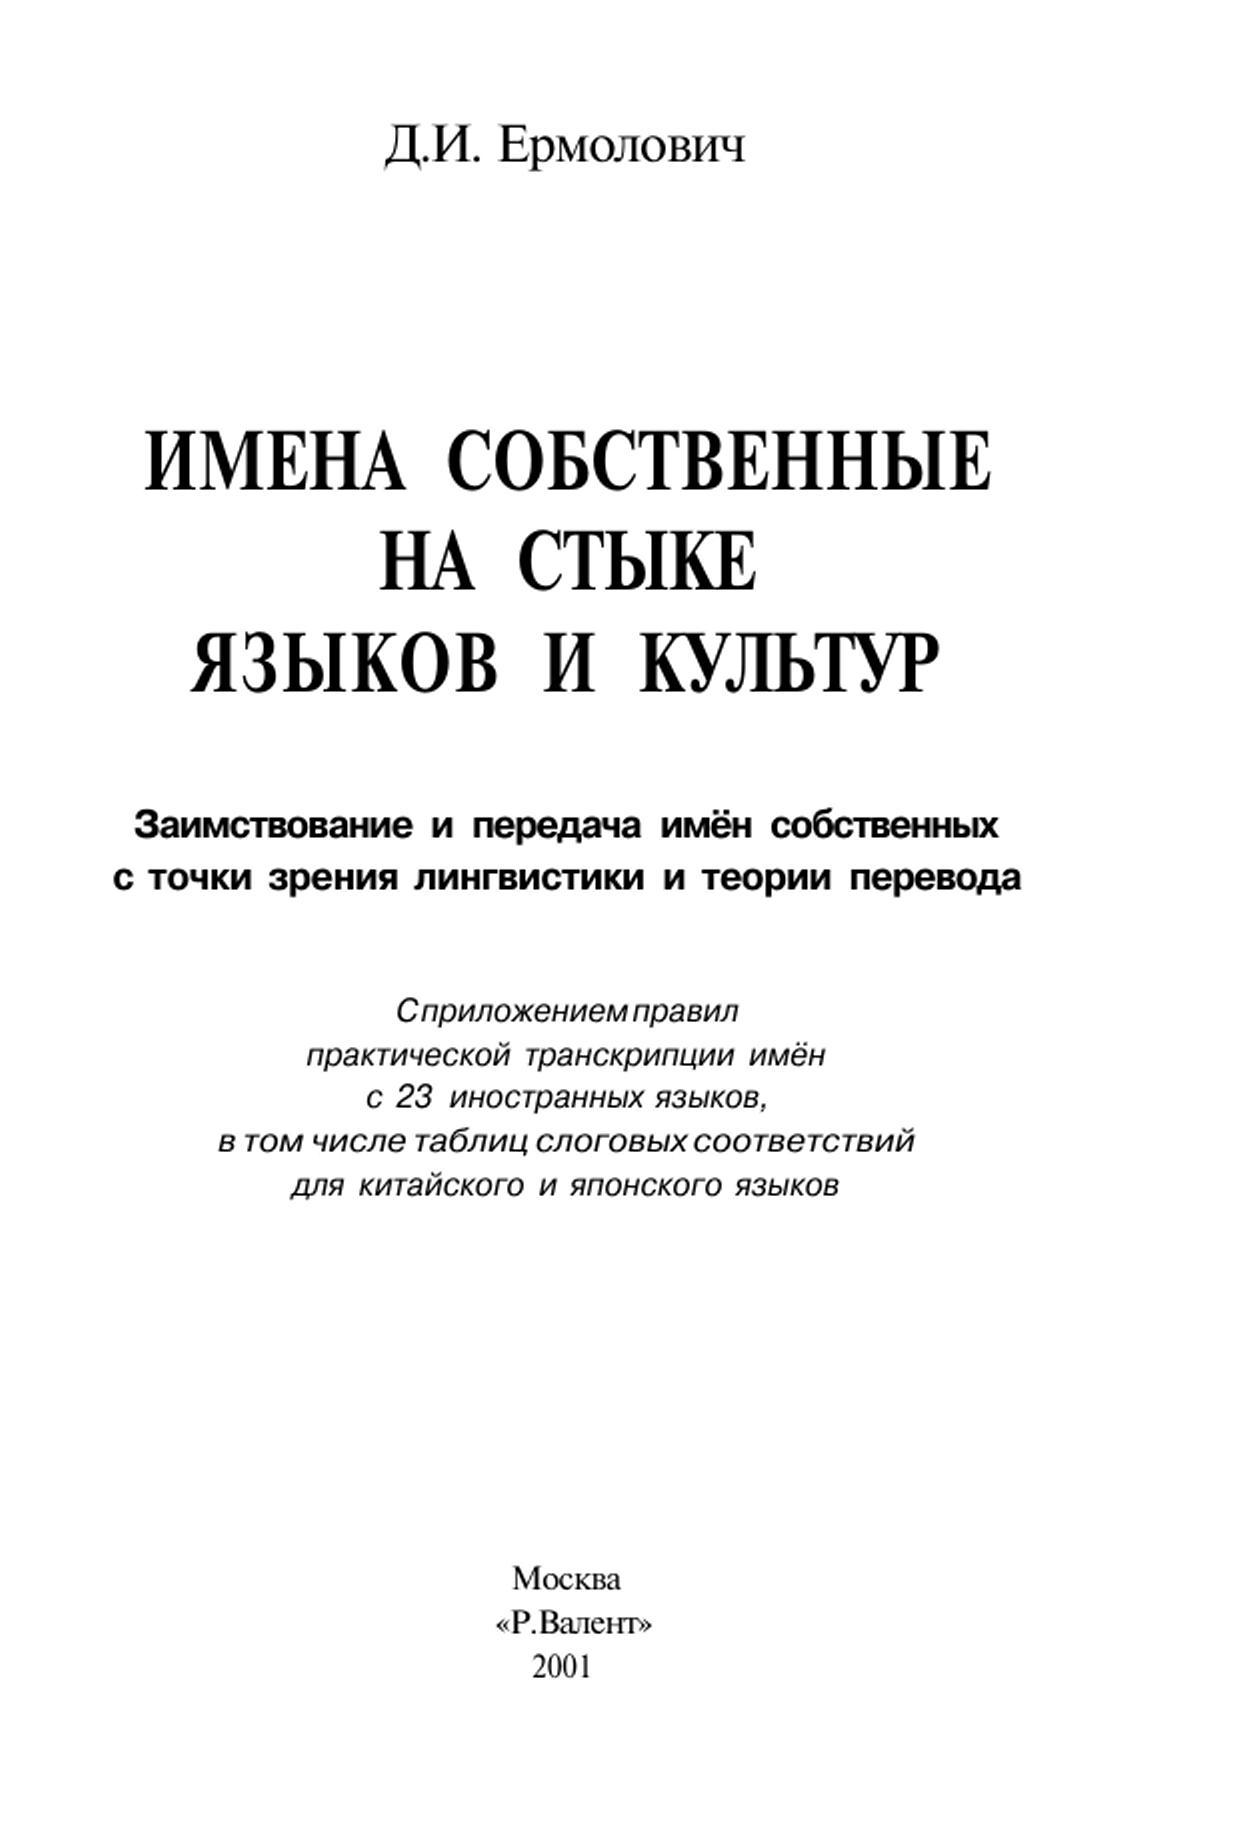 Имена собственные на стыке языков и культур, Ермолович Д.И., 2001